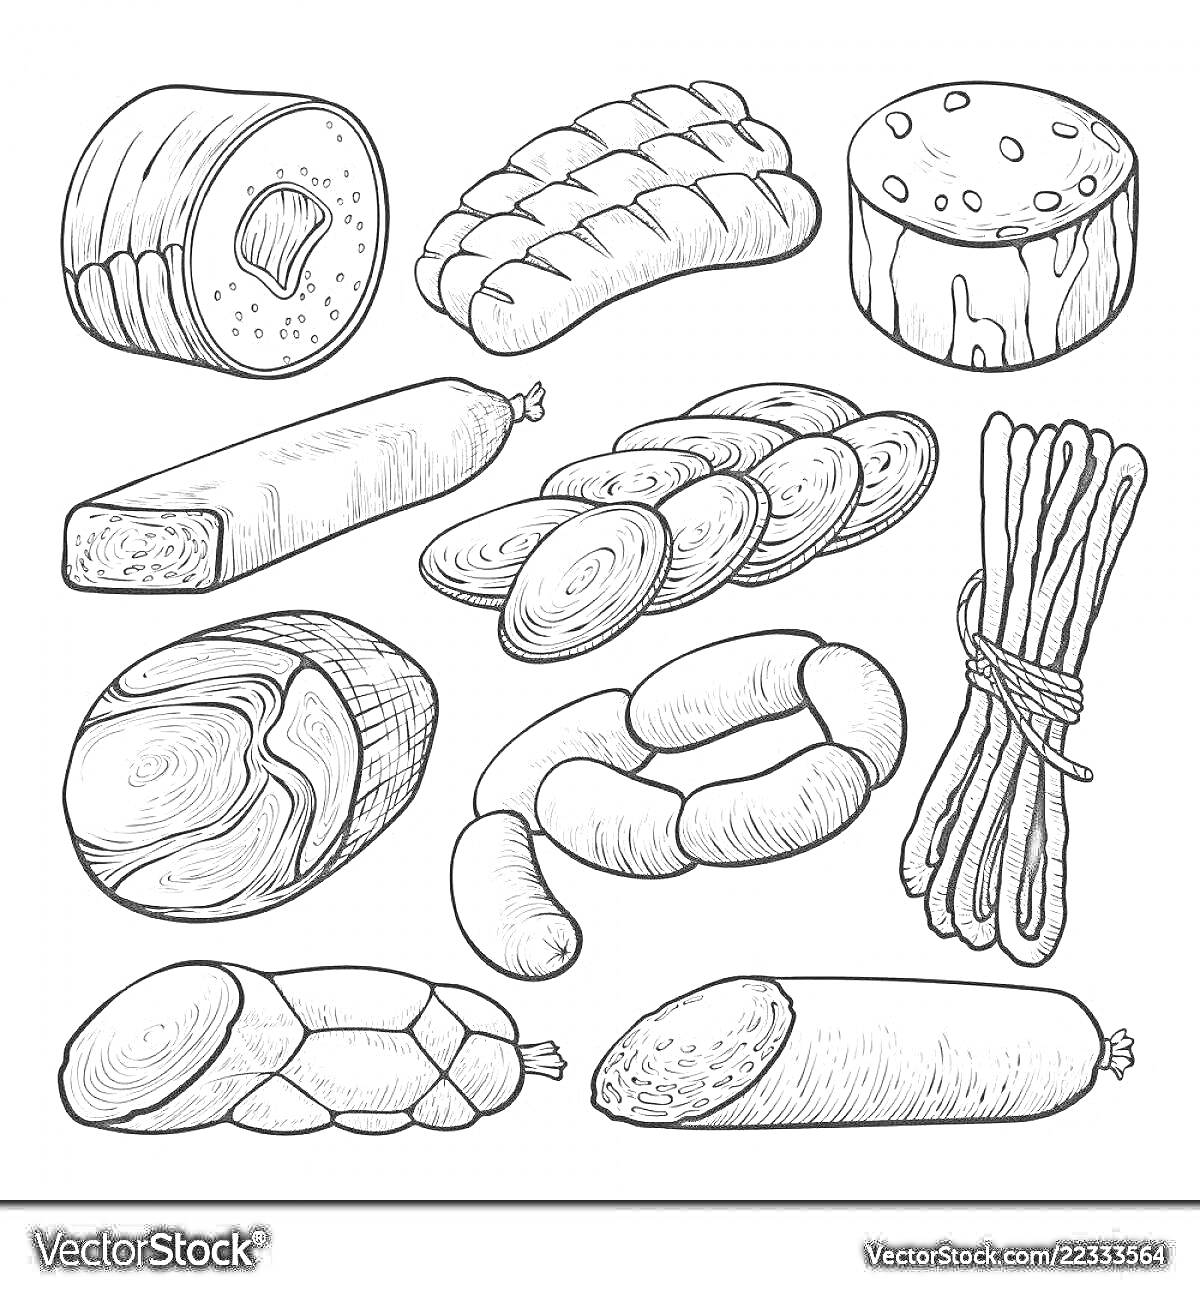 Раскраска Рисунок с разнообразными видами колбасы: нарезанная колбаса, колбасные батоны, колбасные связки, кусочки вареной колбасы, копченое мясо, сосиски в связке